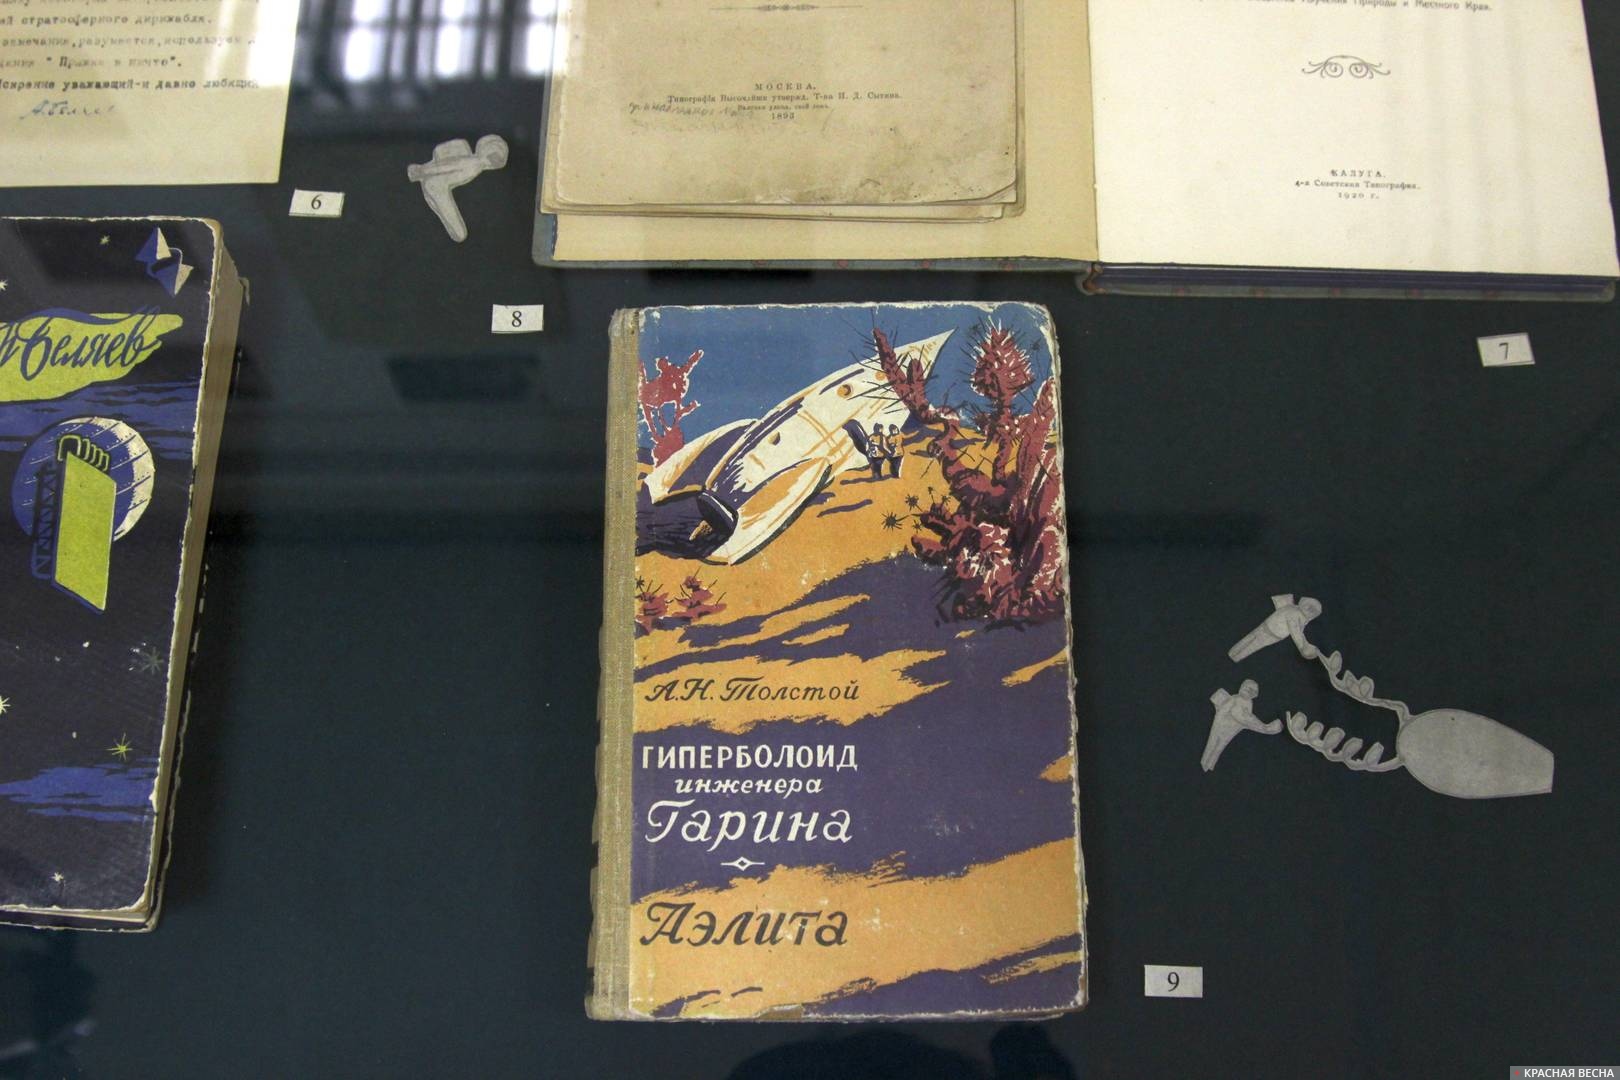 Фантастические и футурологические материалы начала XX века стали идейной основой космического прорыва СССР